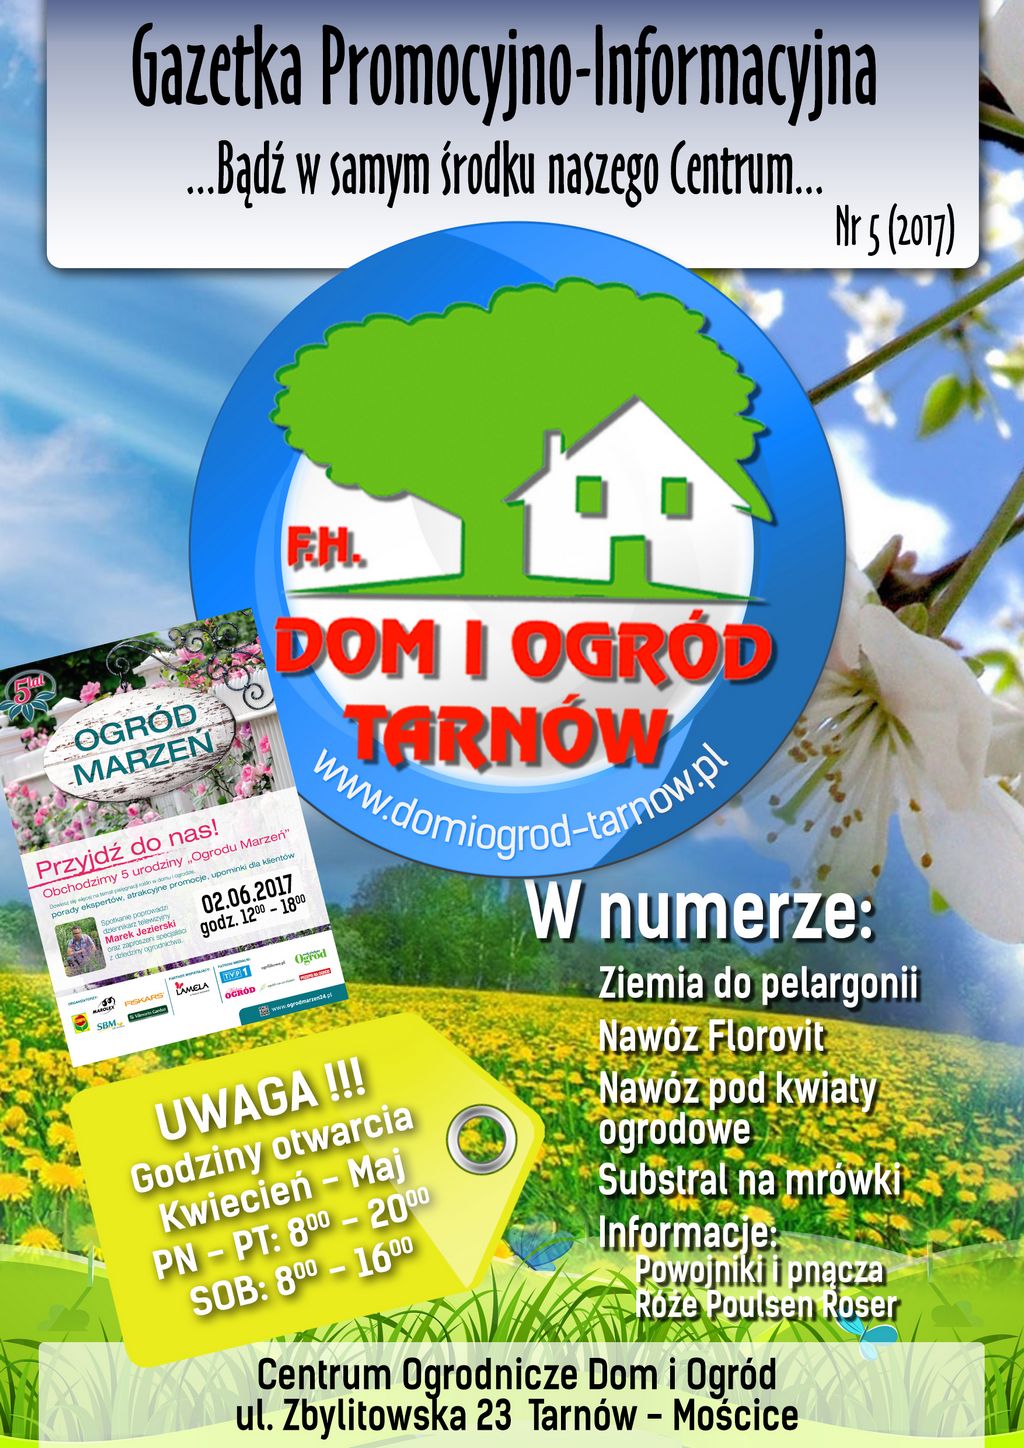 Gazetka Promocyjno-Informacyjna - 5/2017